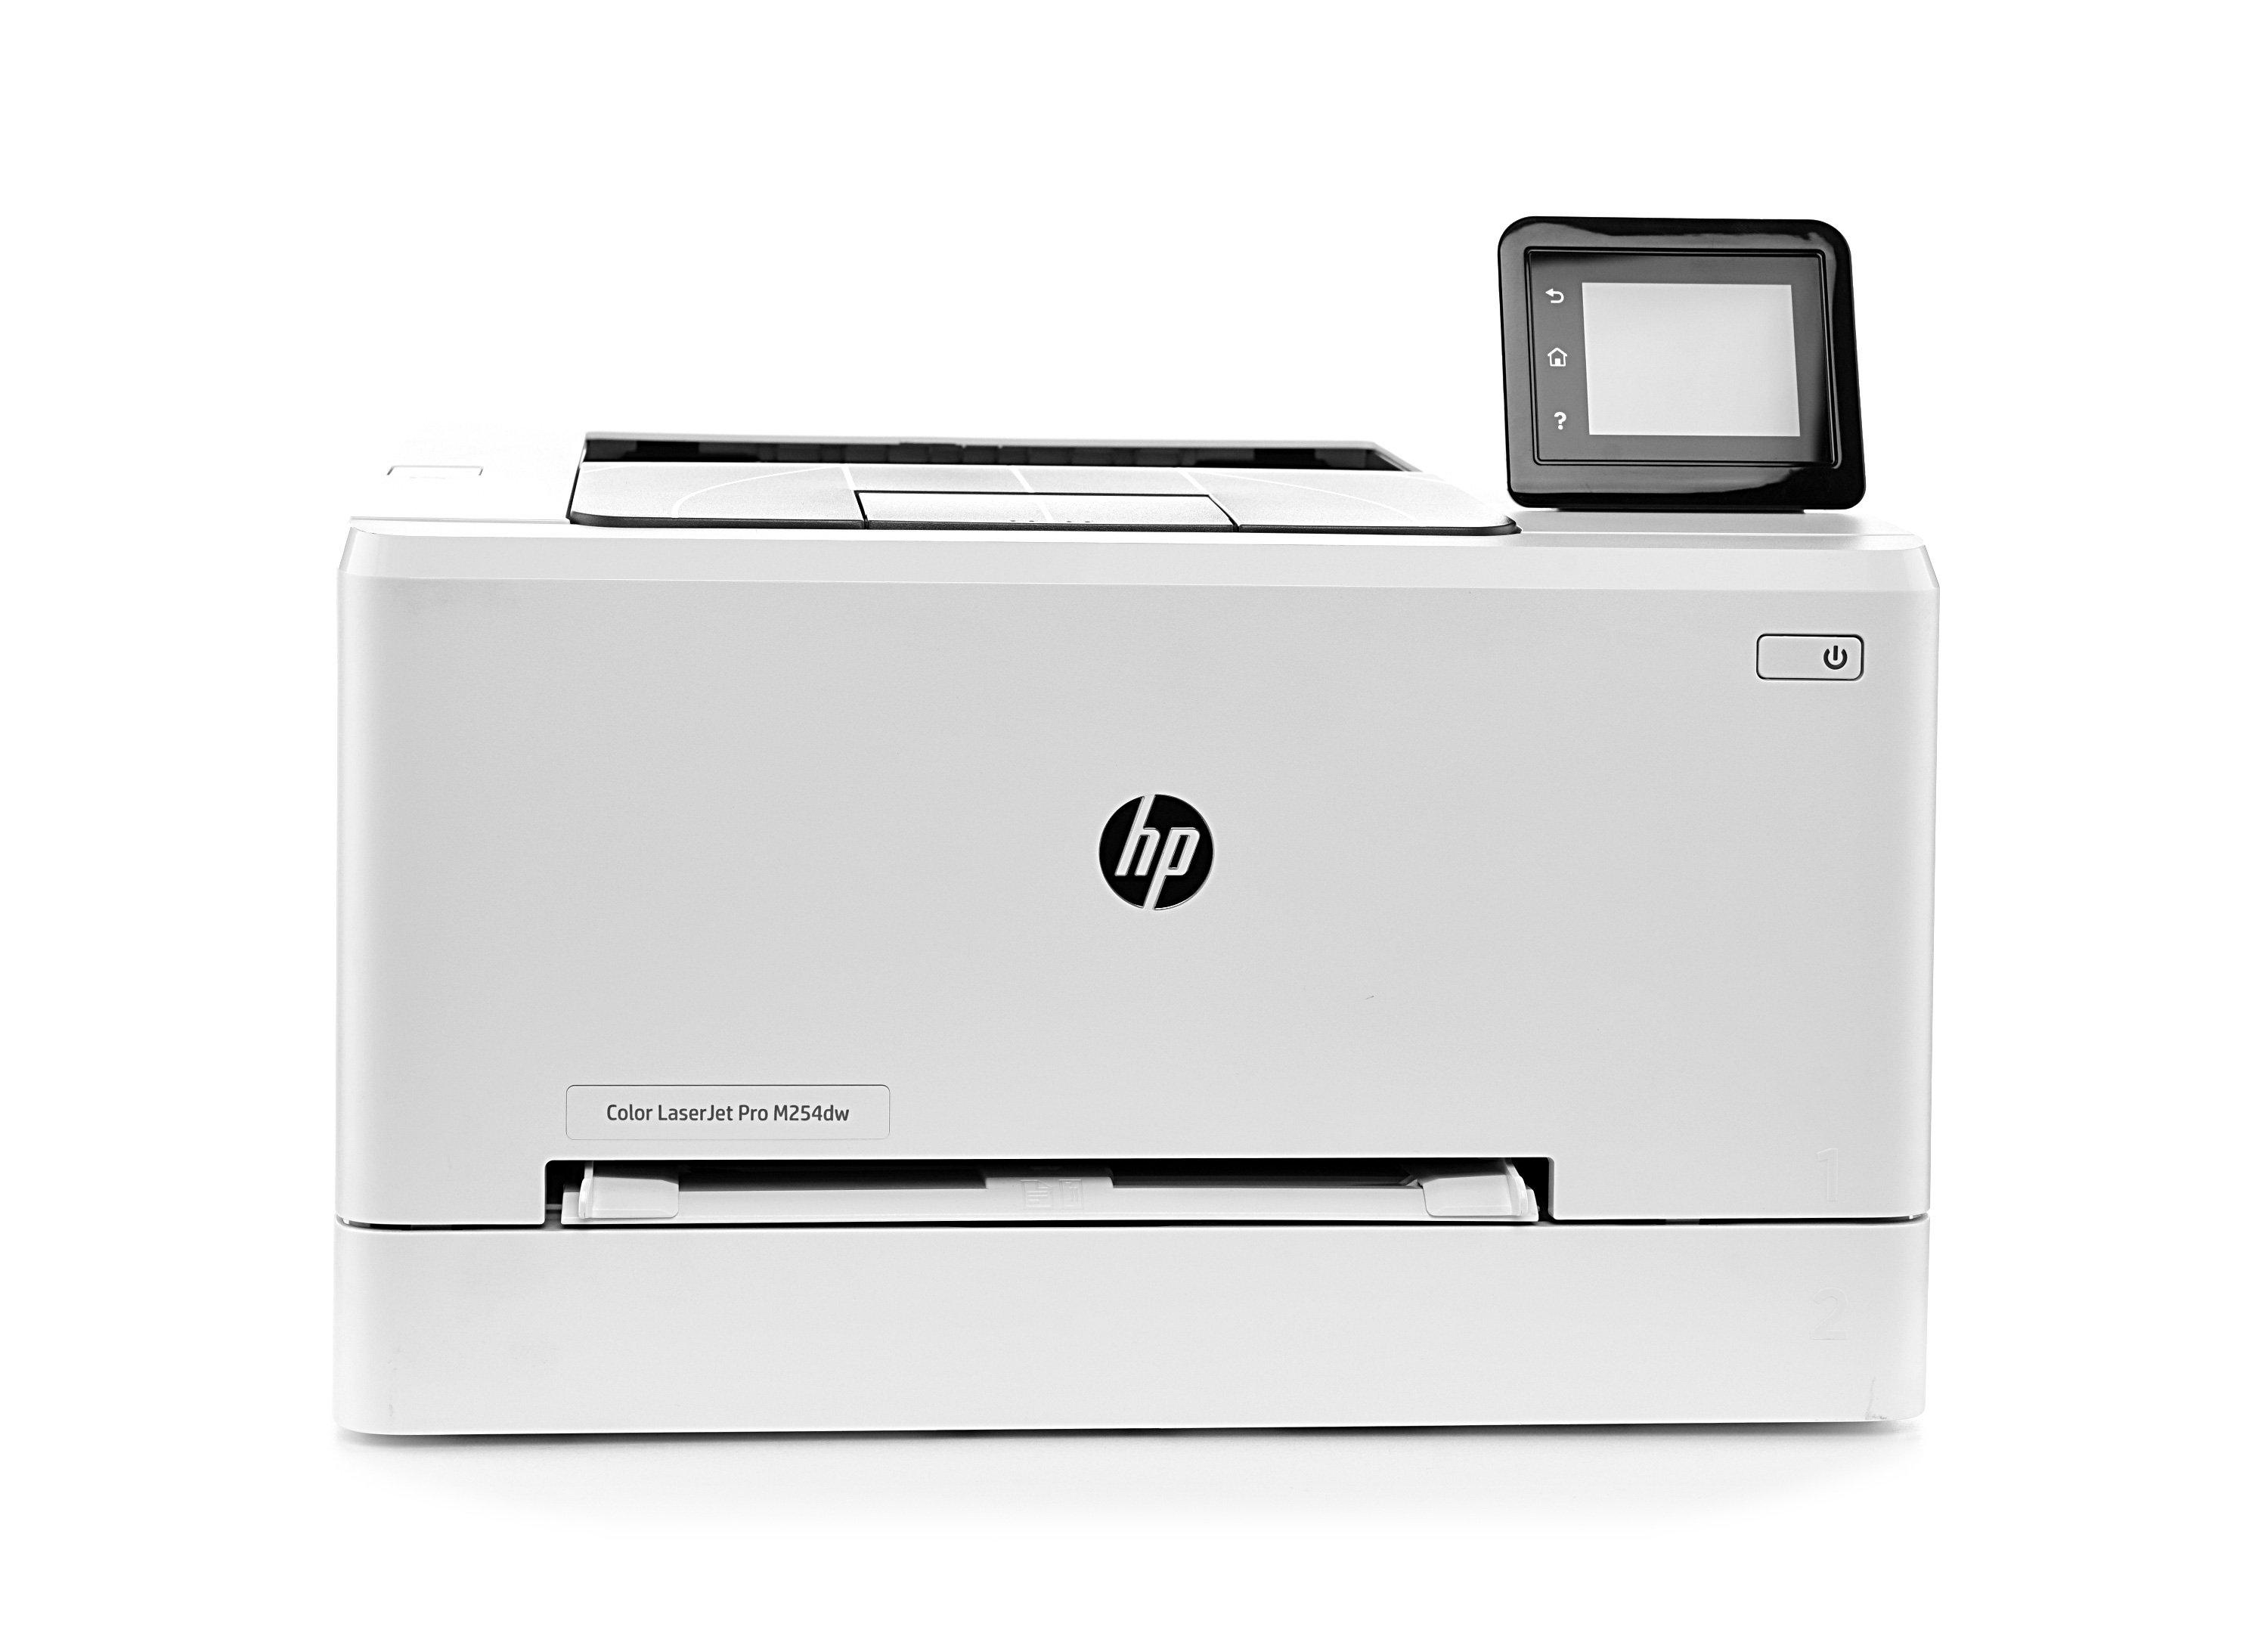 Buy HP Color LaserJet Pro M254nw Printer- White in Saudi Arabia